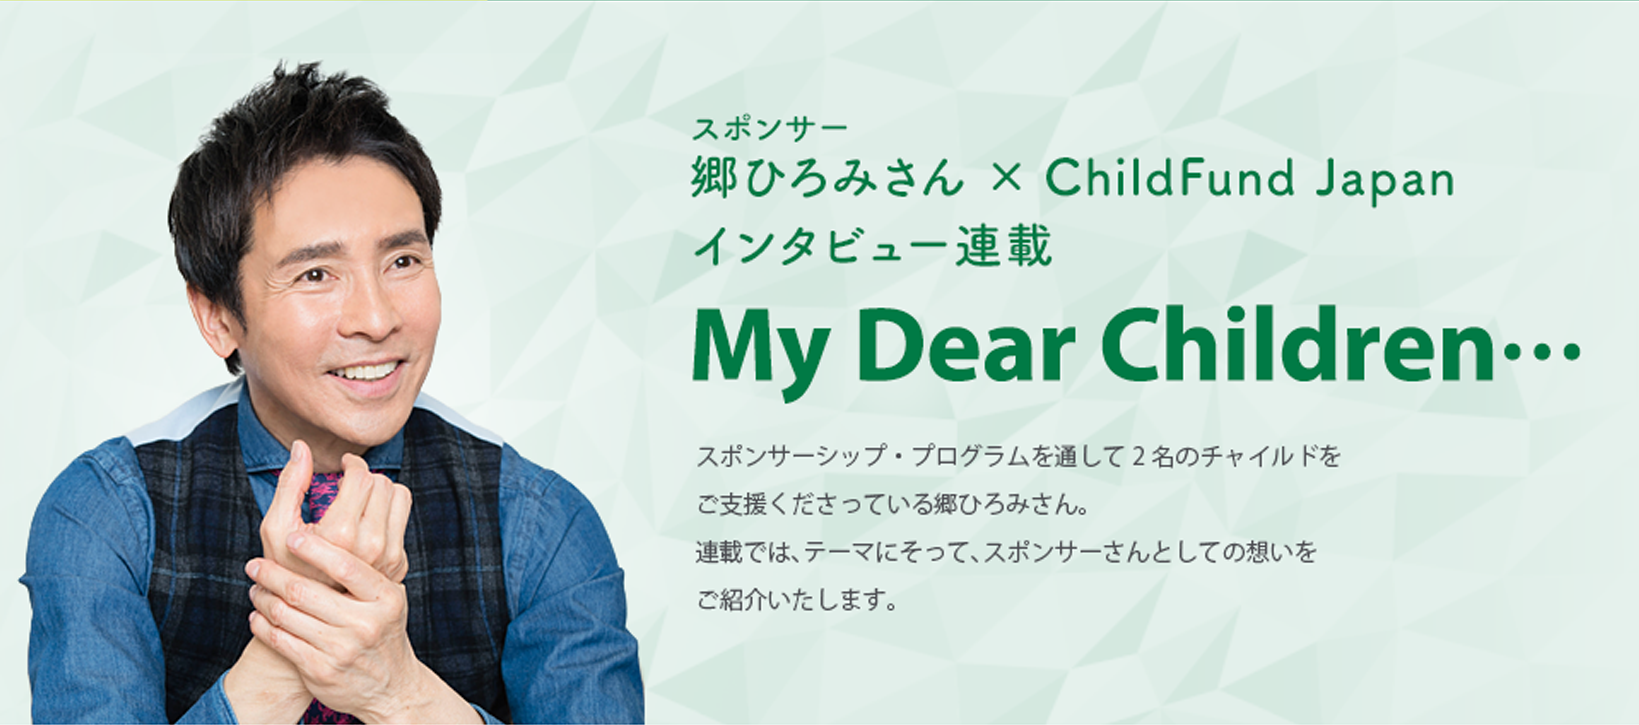 ｽポンサー郷ひろみさん × ChildFund Japanインタビュー連載 My Dear Children… スポンサーシップ・プログラムを通して2名のチャイルドをご支援くださっている郷ひろみさん。
連載では、テーマにそって、スポンサーさんとしての想いをご紹介いたします。